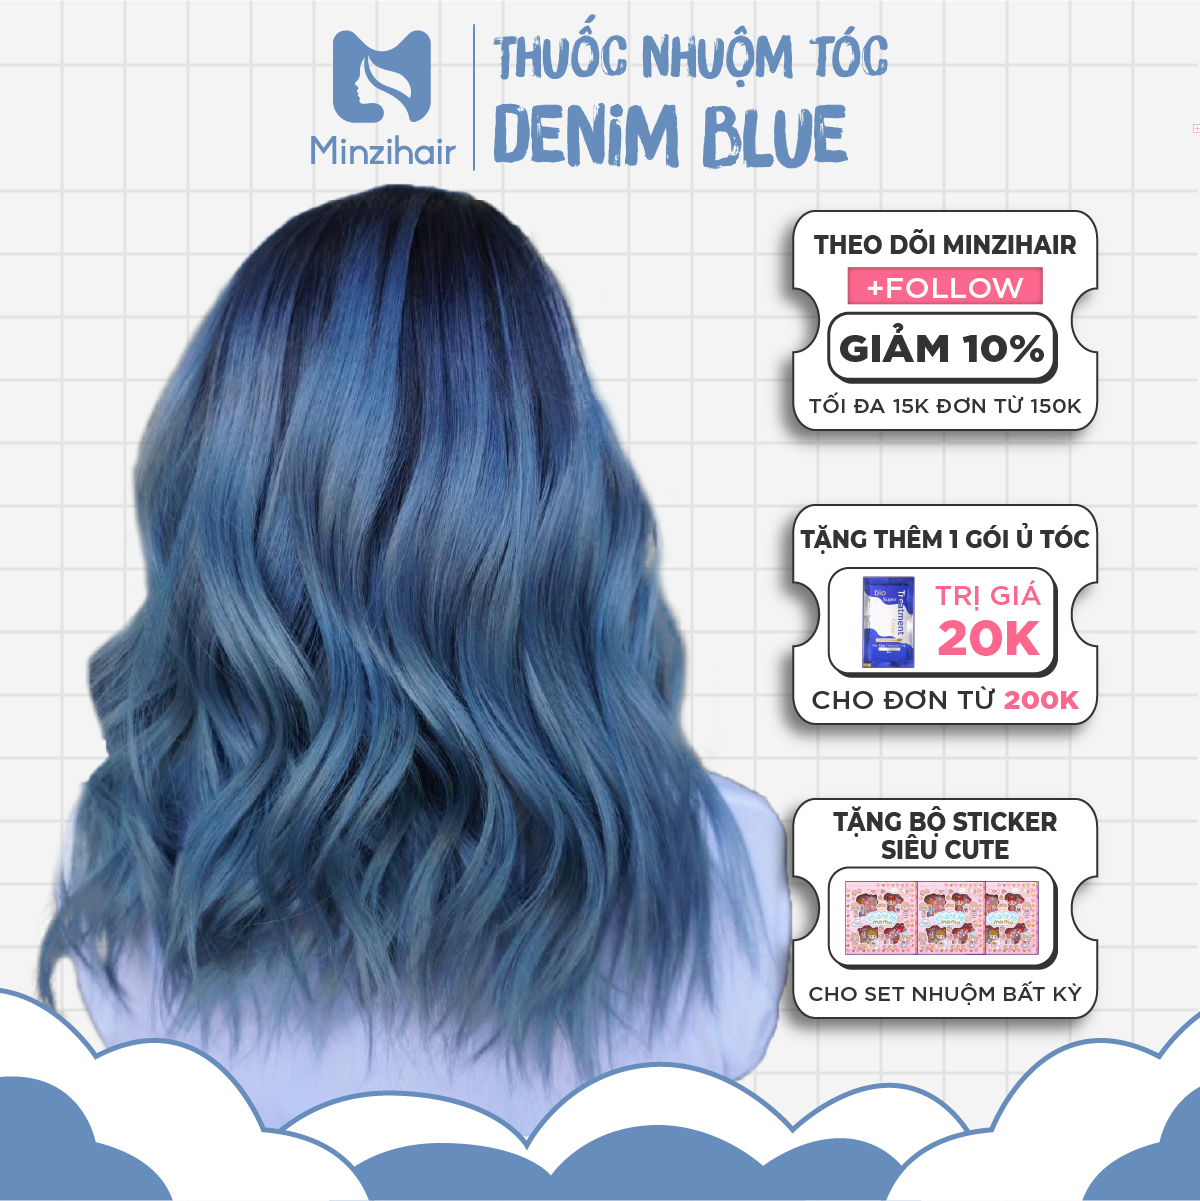 Denim Blue - Khám phá màu sắc ngọt ngào của tóc nhuộm Denim Blue! Sự kết hợp hoàn hảo giữa xanh da trời và xanh lá cây mang đến cho bạn một diện mạo mới hoàn toàn. Định hình lại phong cách của bạn và trở thành tâm điểm của mọi ánh nhìn với tóc nhuộm Denim Blue của chúng tôi! Hãy xem ảnh để cảm nhận sự thay đổi tuyệt vời này.